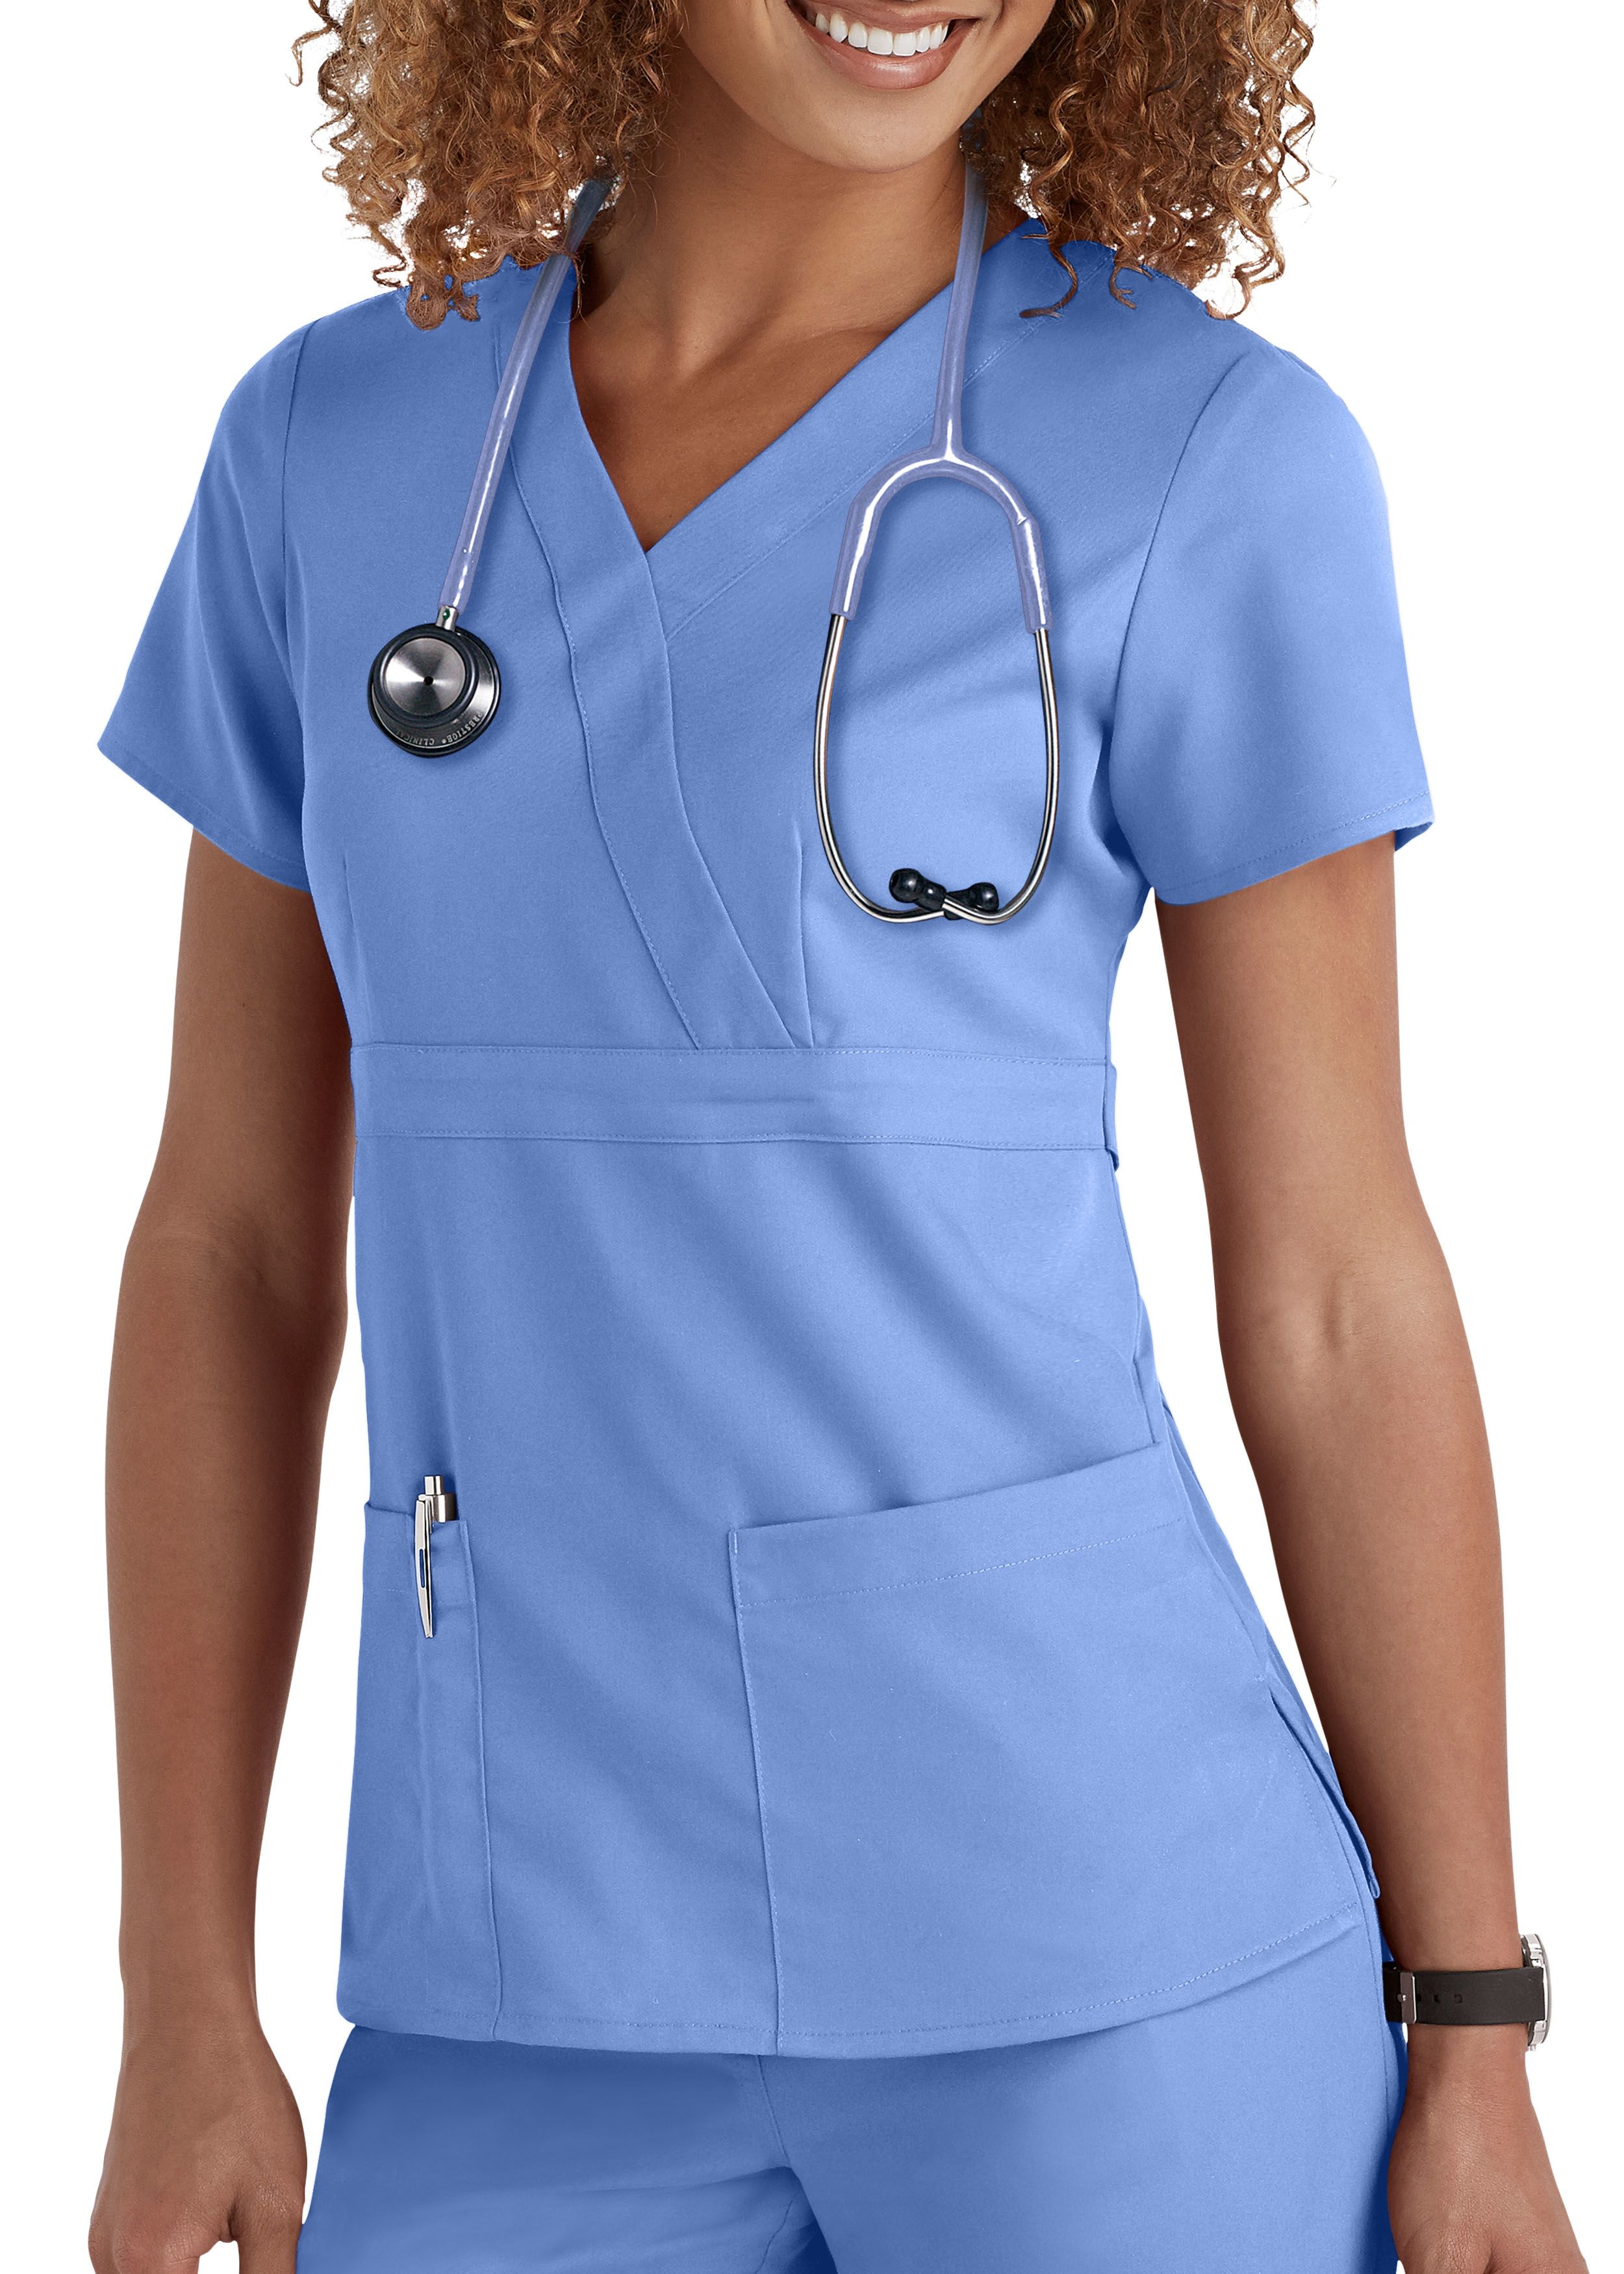 Grey's Anatomy медицинская одежда